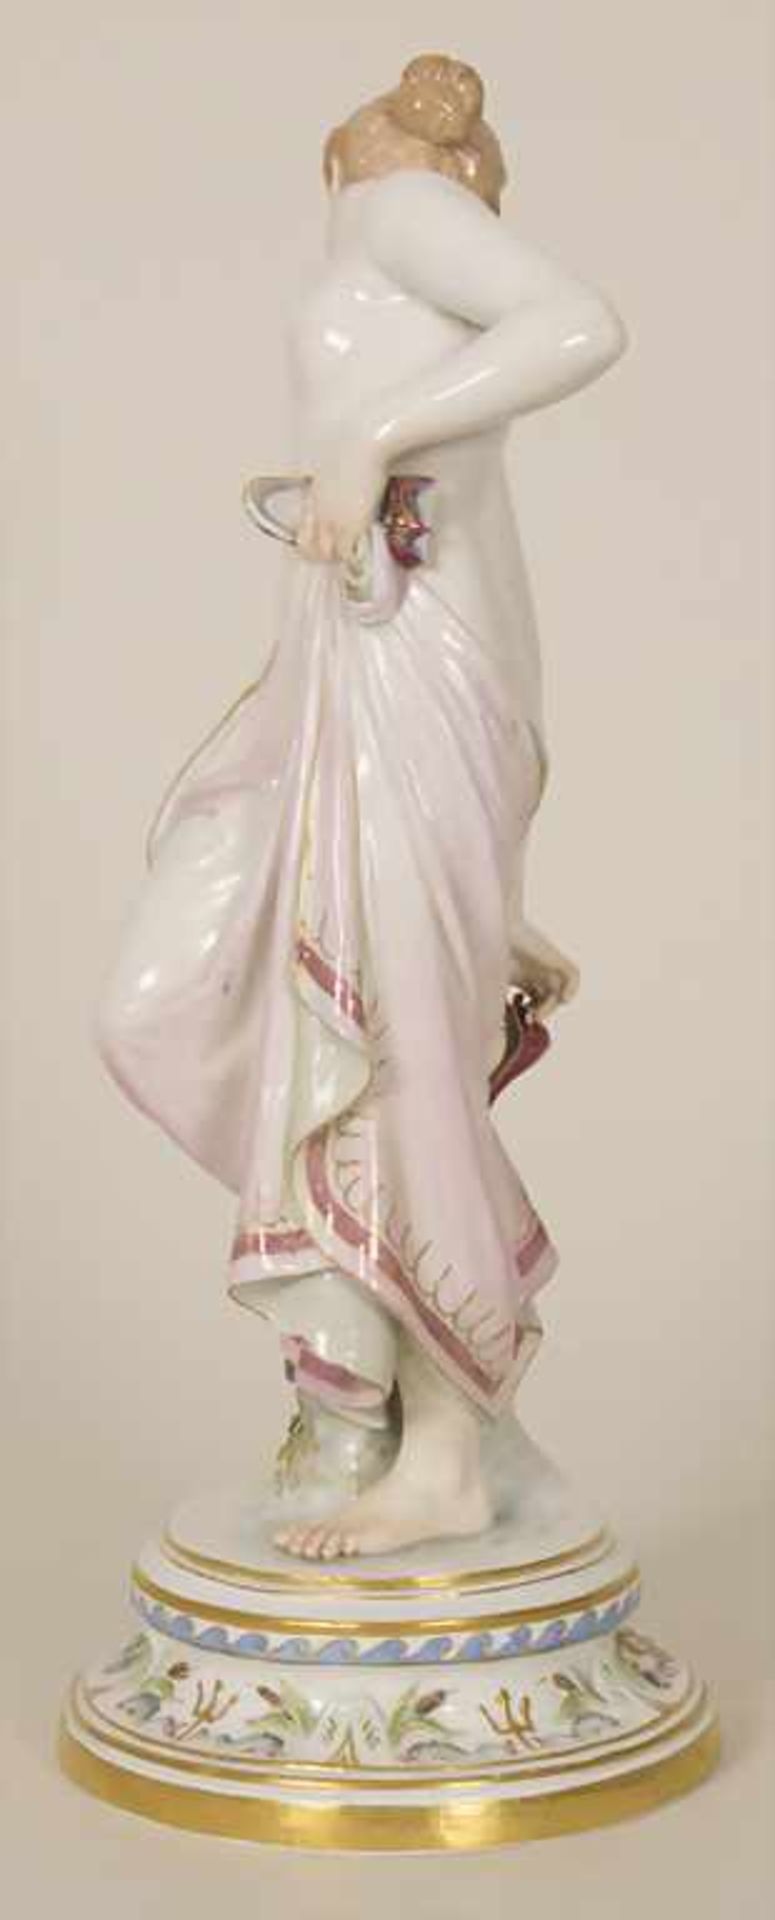 Porzellanfigur 'Nach dem Bade' / A porcelain figure 'After the bath', Robert Ockelmann (1849-1915) - Image 4 of 9